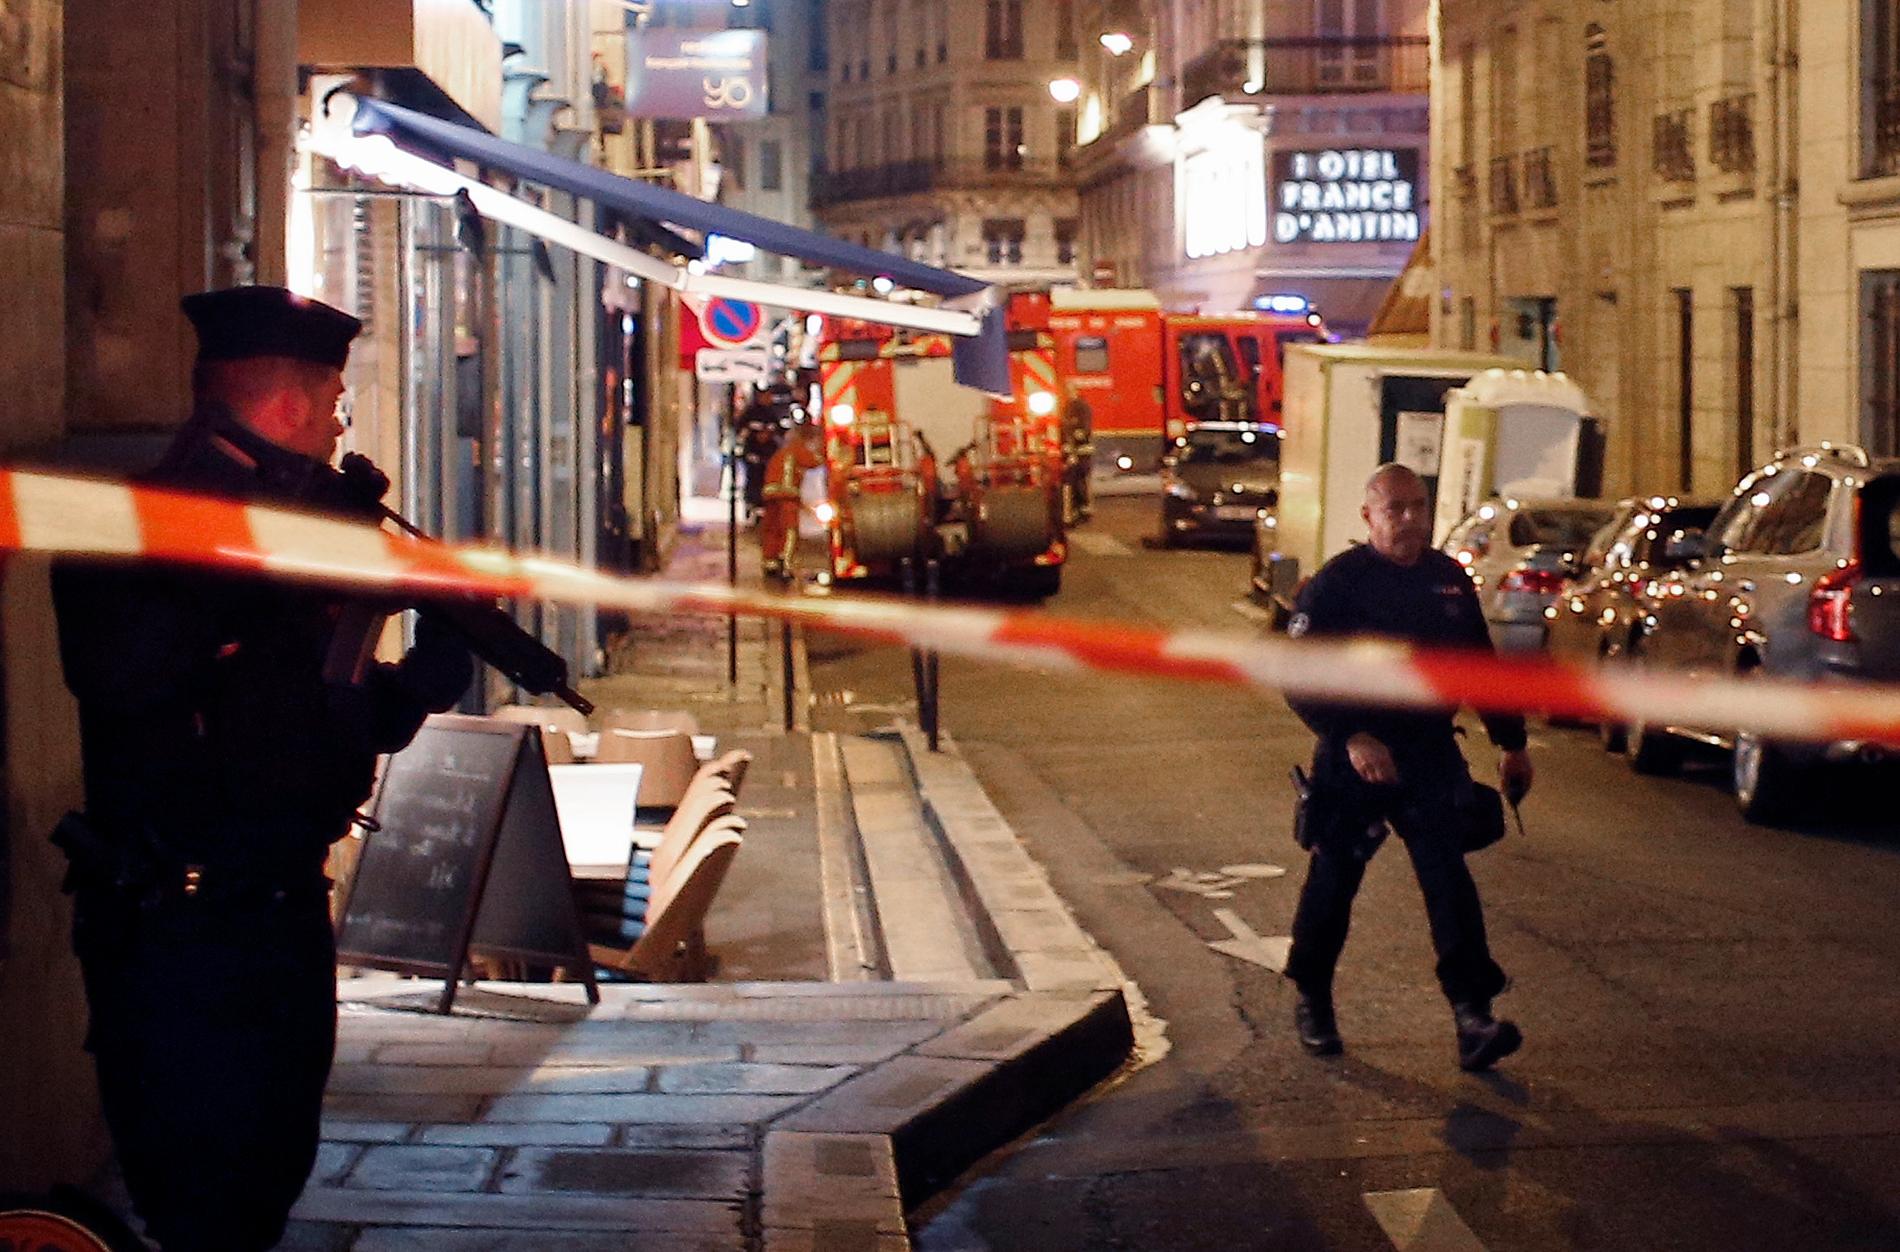 Polis vid platsen för för knivattacken i Paris på lördagskvällen.